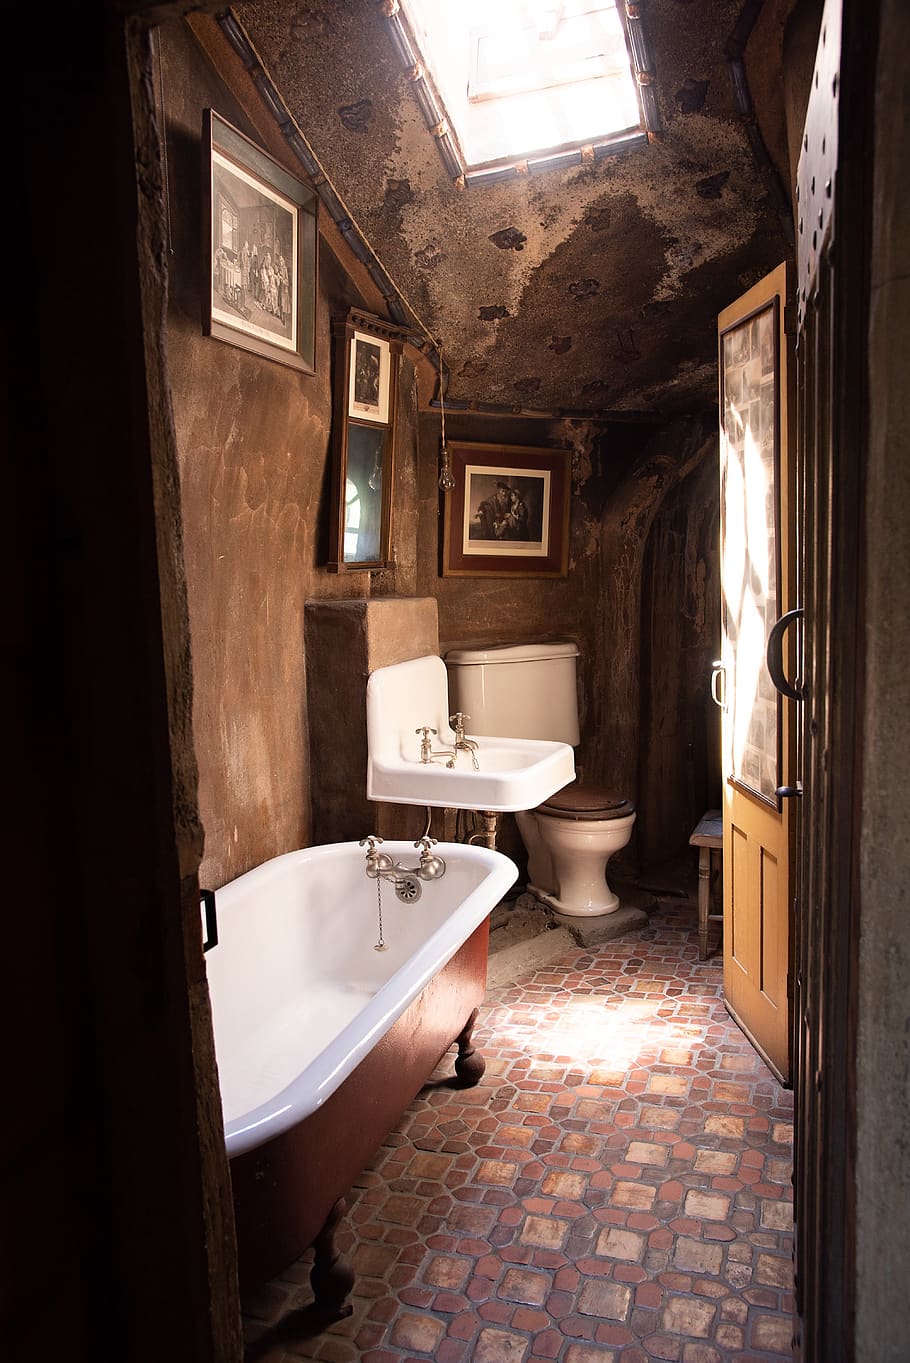 antiguidade, banheiro, casa, banheira, pia, torneira, vaso sanitário, antigo, rústico, latão